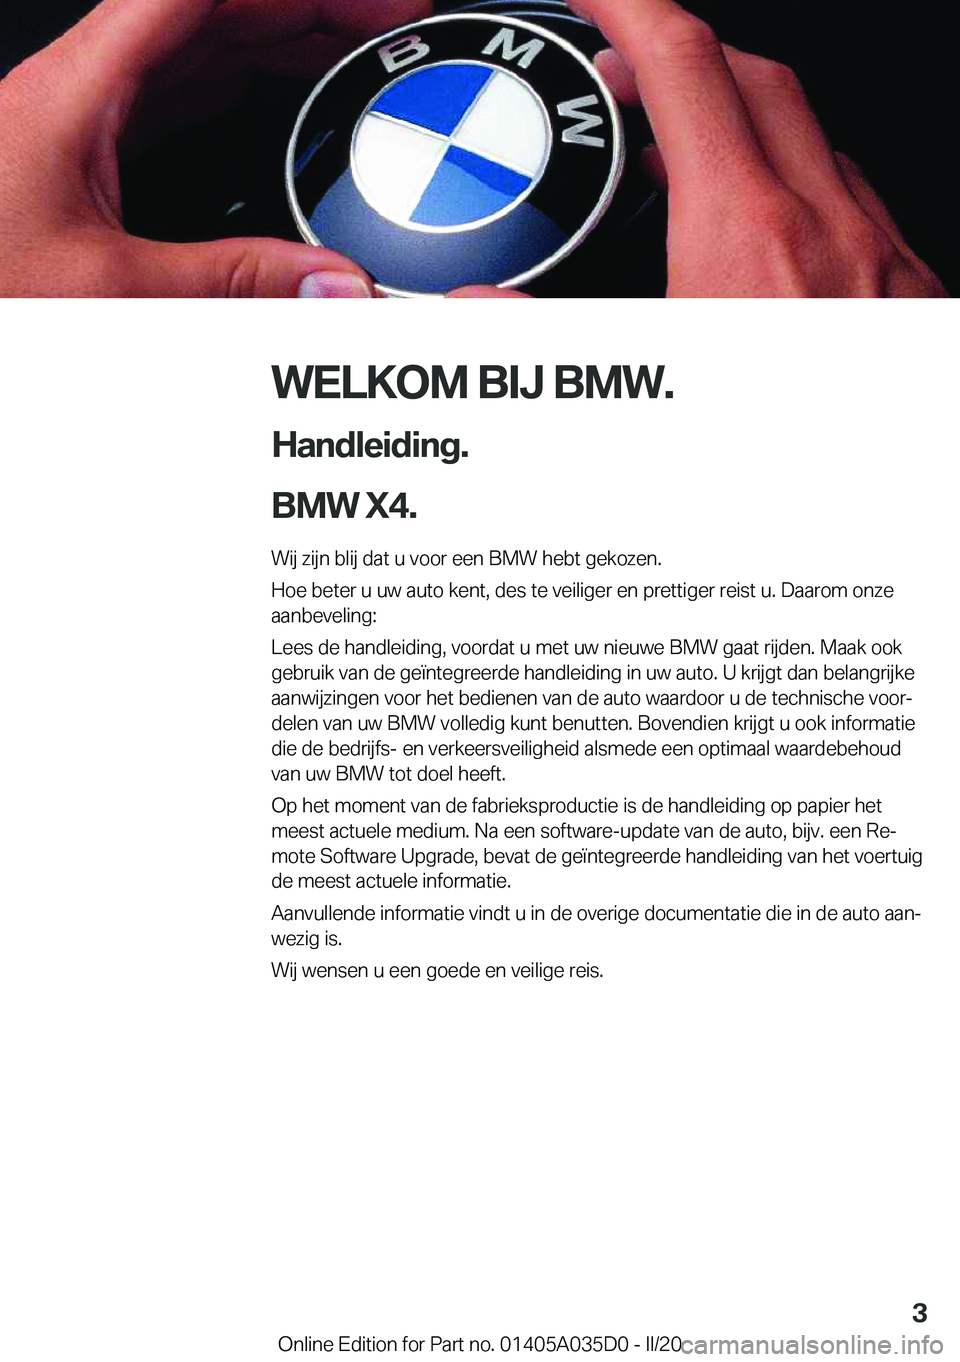 BMW X4 2020  Instructieboekjes (in Dutch) �W�E�L�K�O�M��B�I�J��B�M�W�.
�H�a�n�d�l�e�i�d�i�n�g�.
�B�M�W��X�4�. �W�i�j��z�i�j�n��b�l�i�j��d�a�t��u��v�o�o�r��e�e�n��B�M�W��h�e�b�t��g�e�k�o�z�e�n�.�H�o�e��b�e�t�e�r��u��u�w��a�u�t�